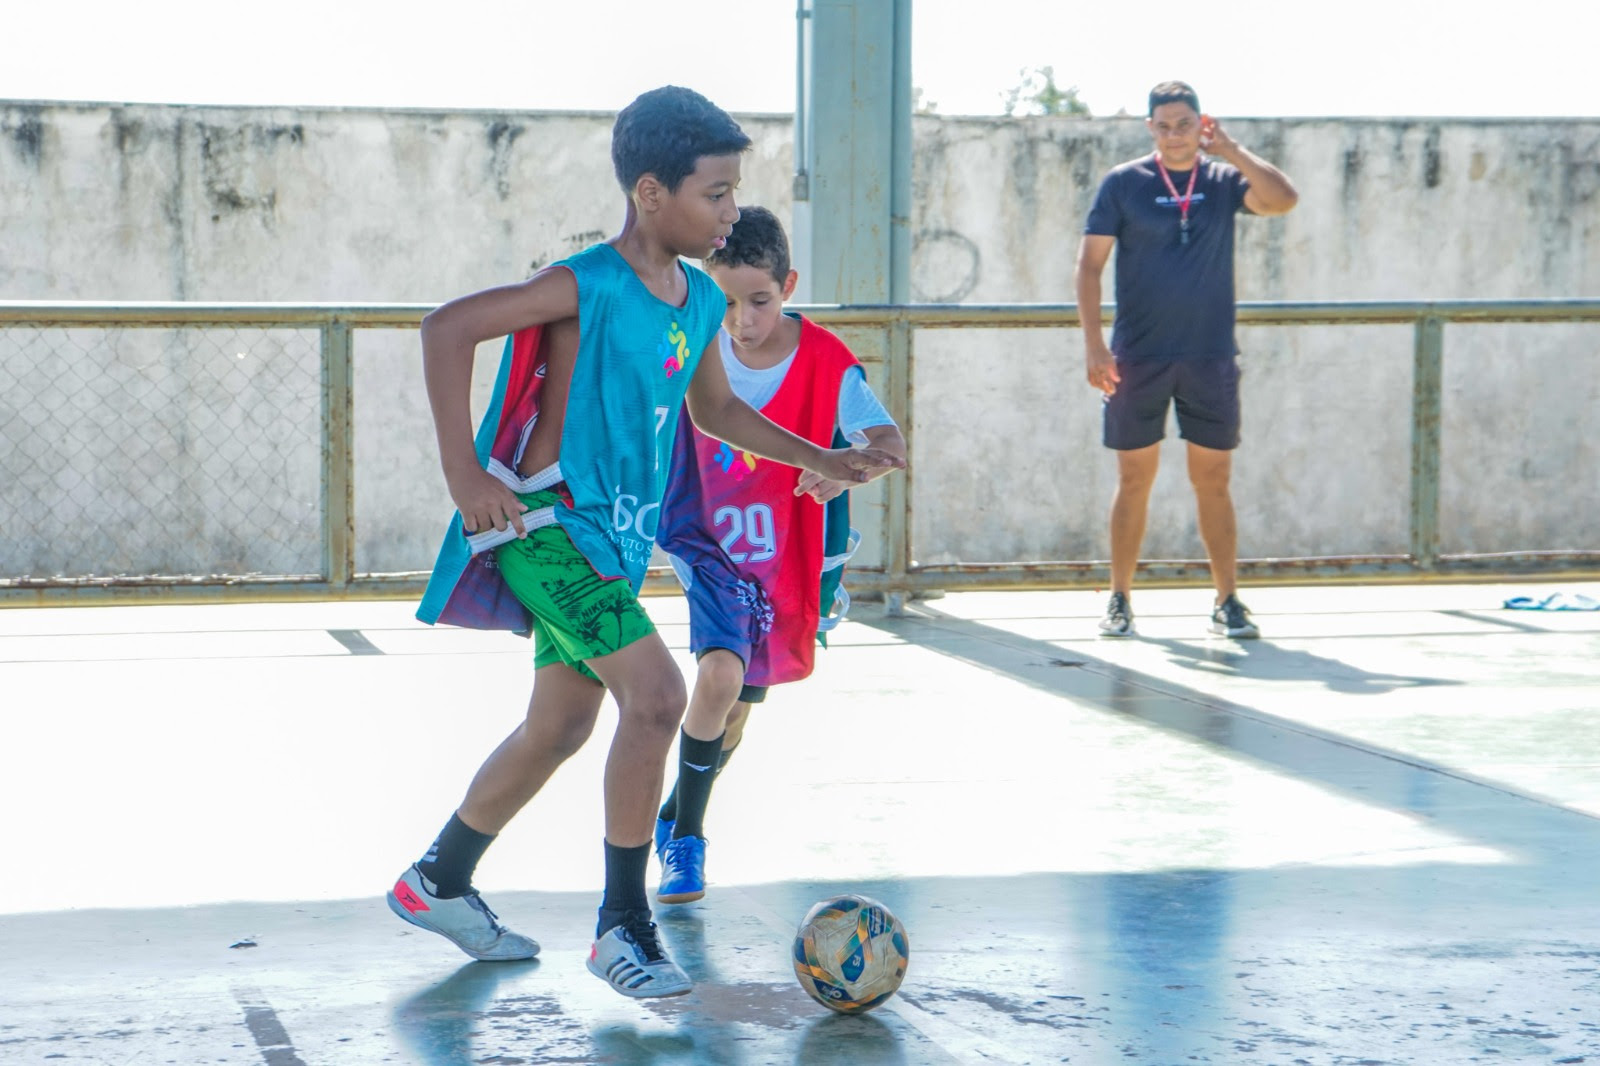 Os núcleos oferecem aulas de futebol, futsal, vôlei, e handebol, com frequência de até três vezes por semana nos períodos matutino e vespertino.